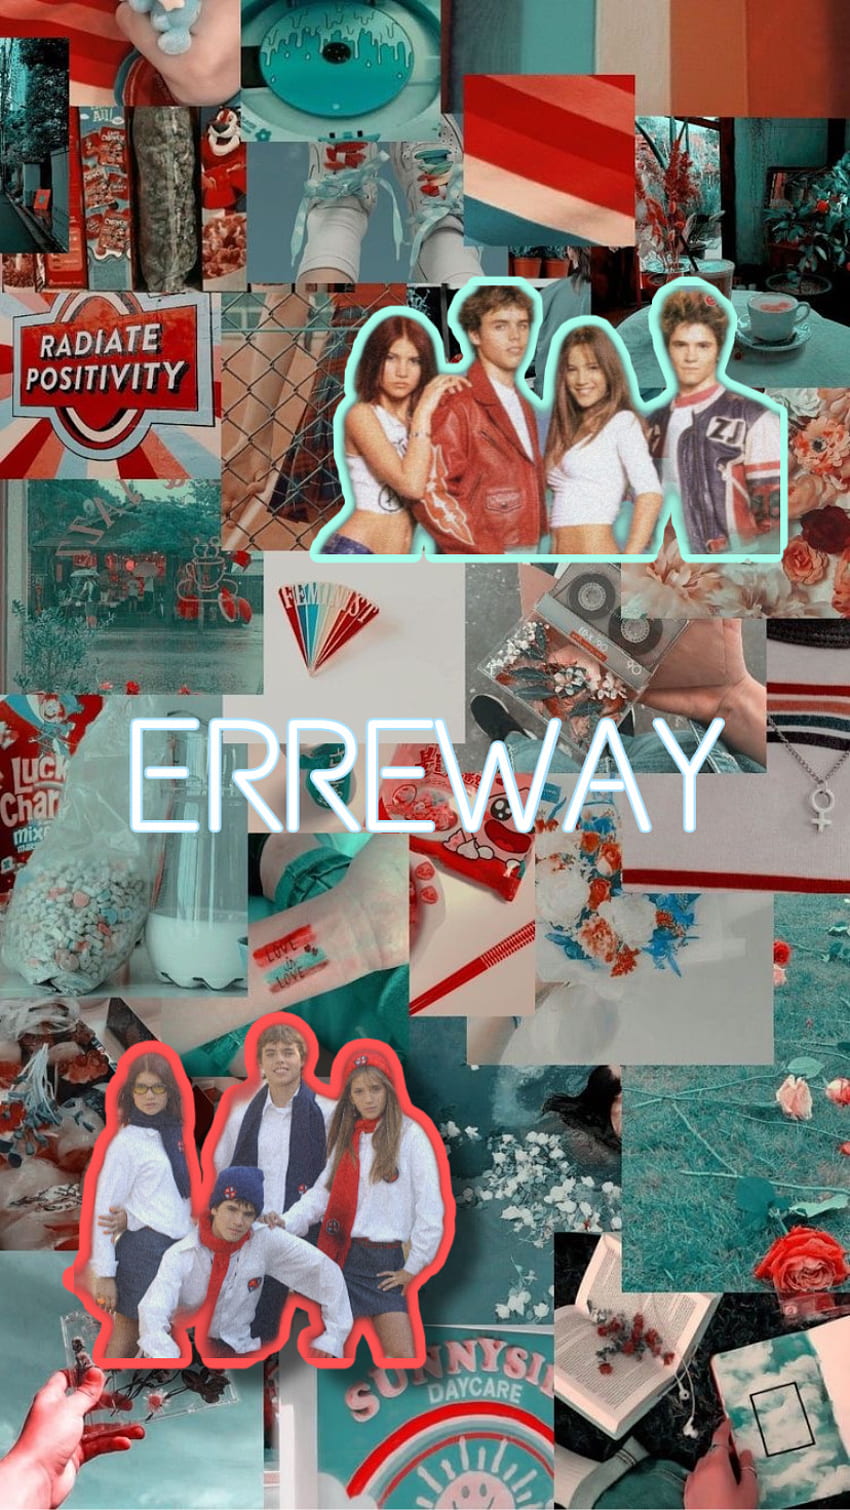 Erre way, Erreway, rebelde way HD phone wallpaper